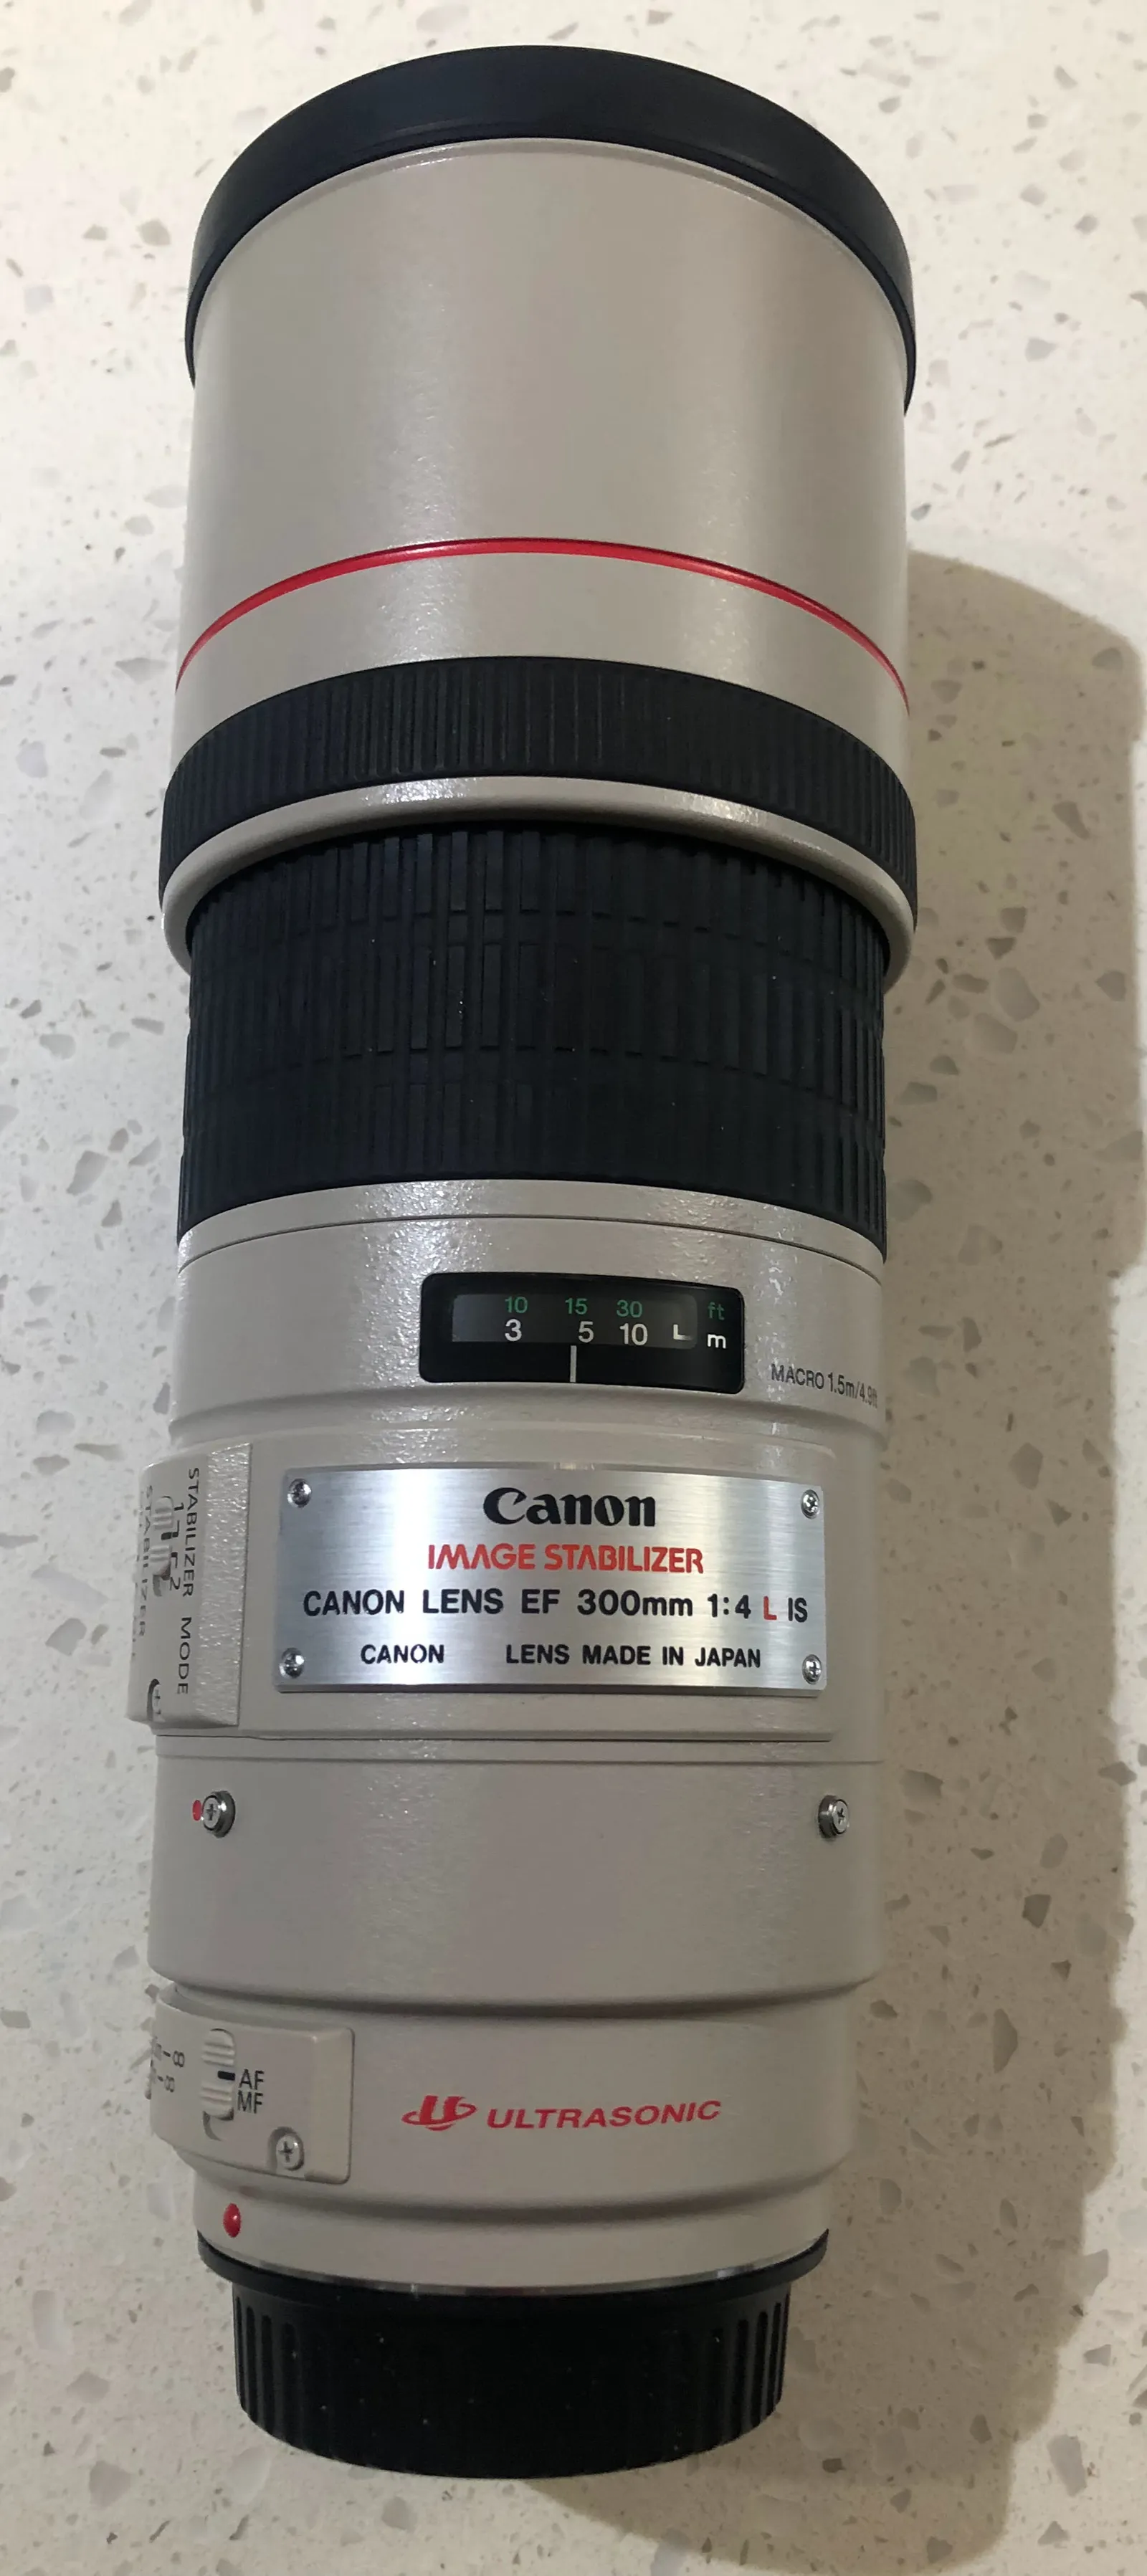 Canon EF300 f/4L IS USM lens